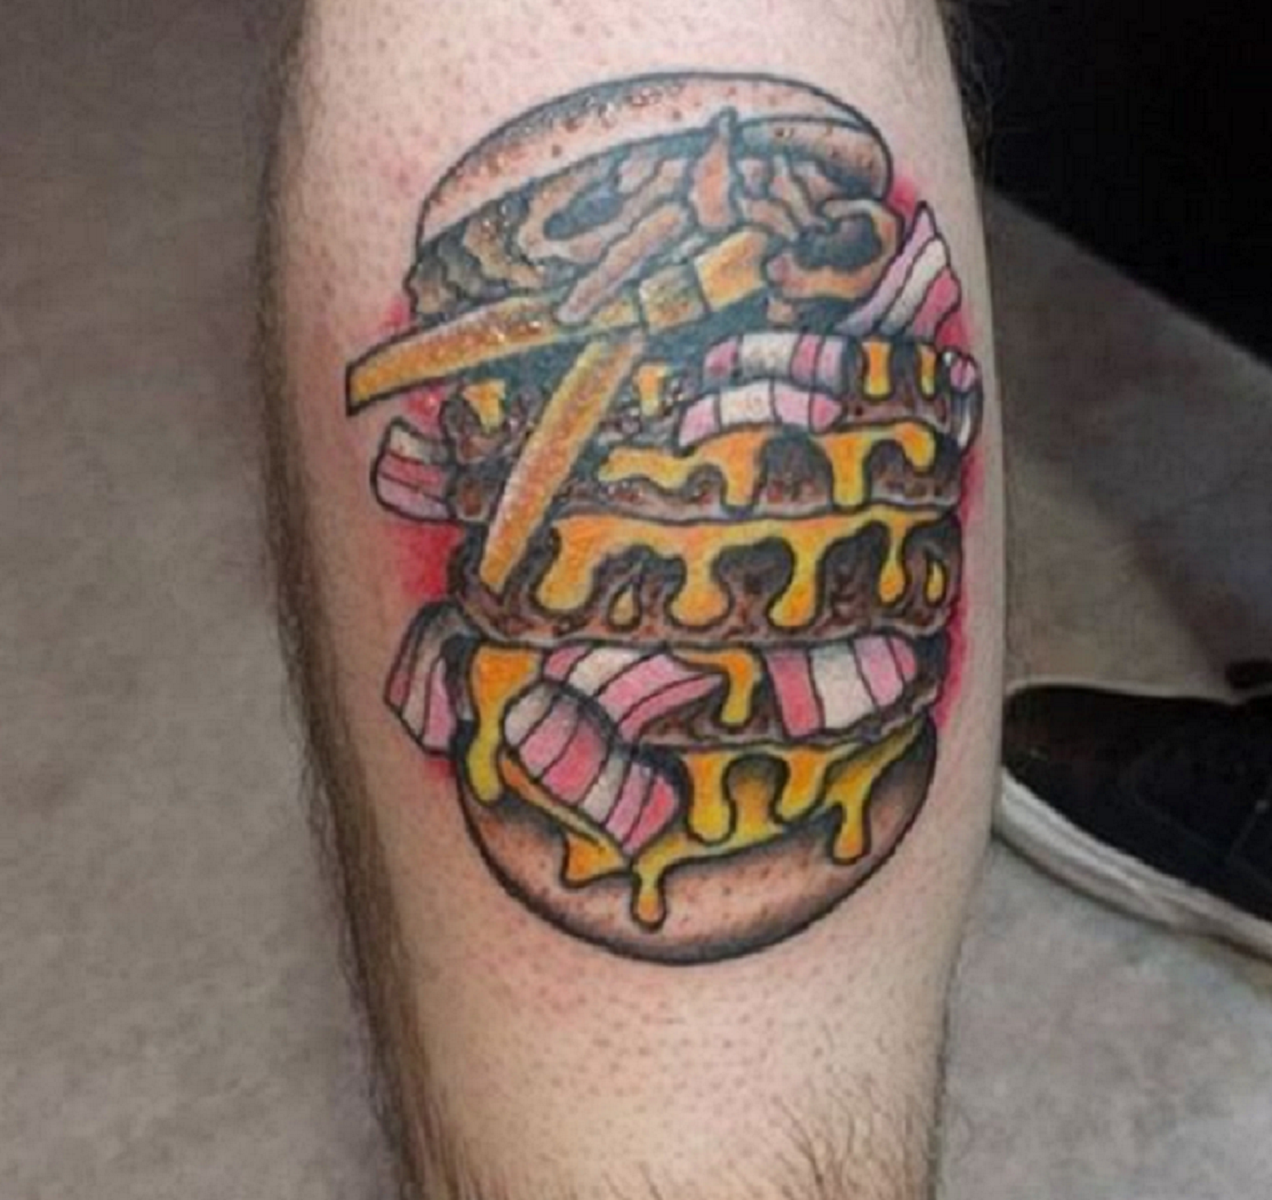 Tatúate una hamburguesa a medida real y pídetela gratis para siempre